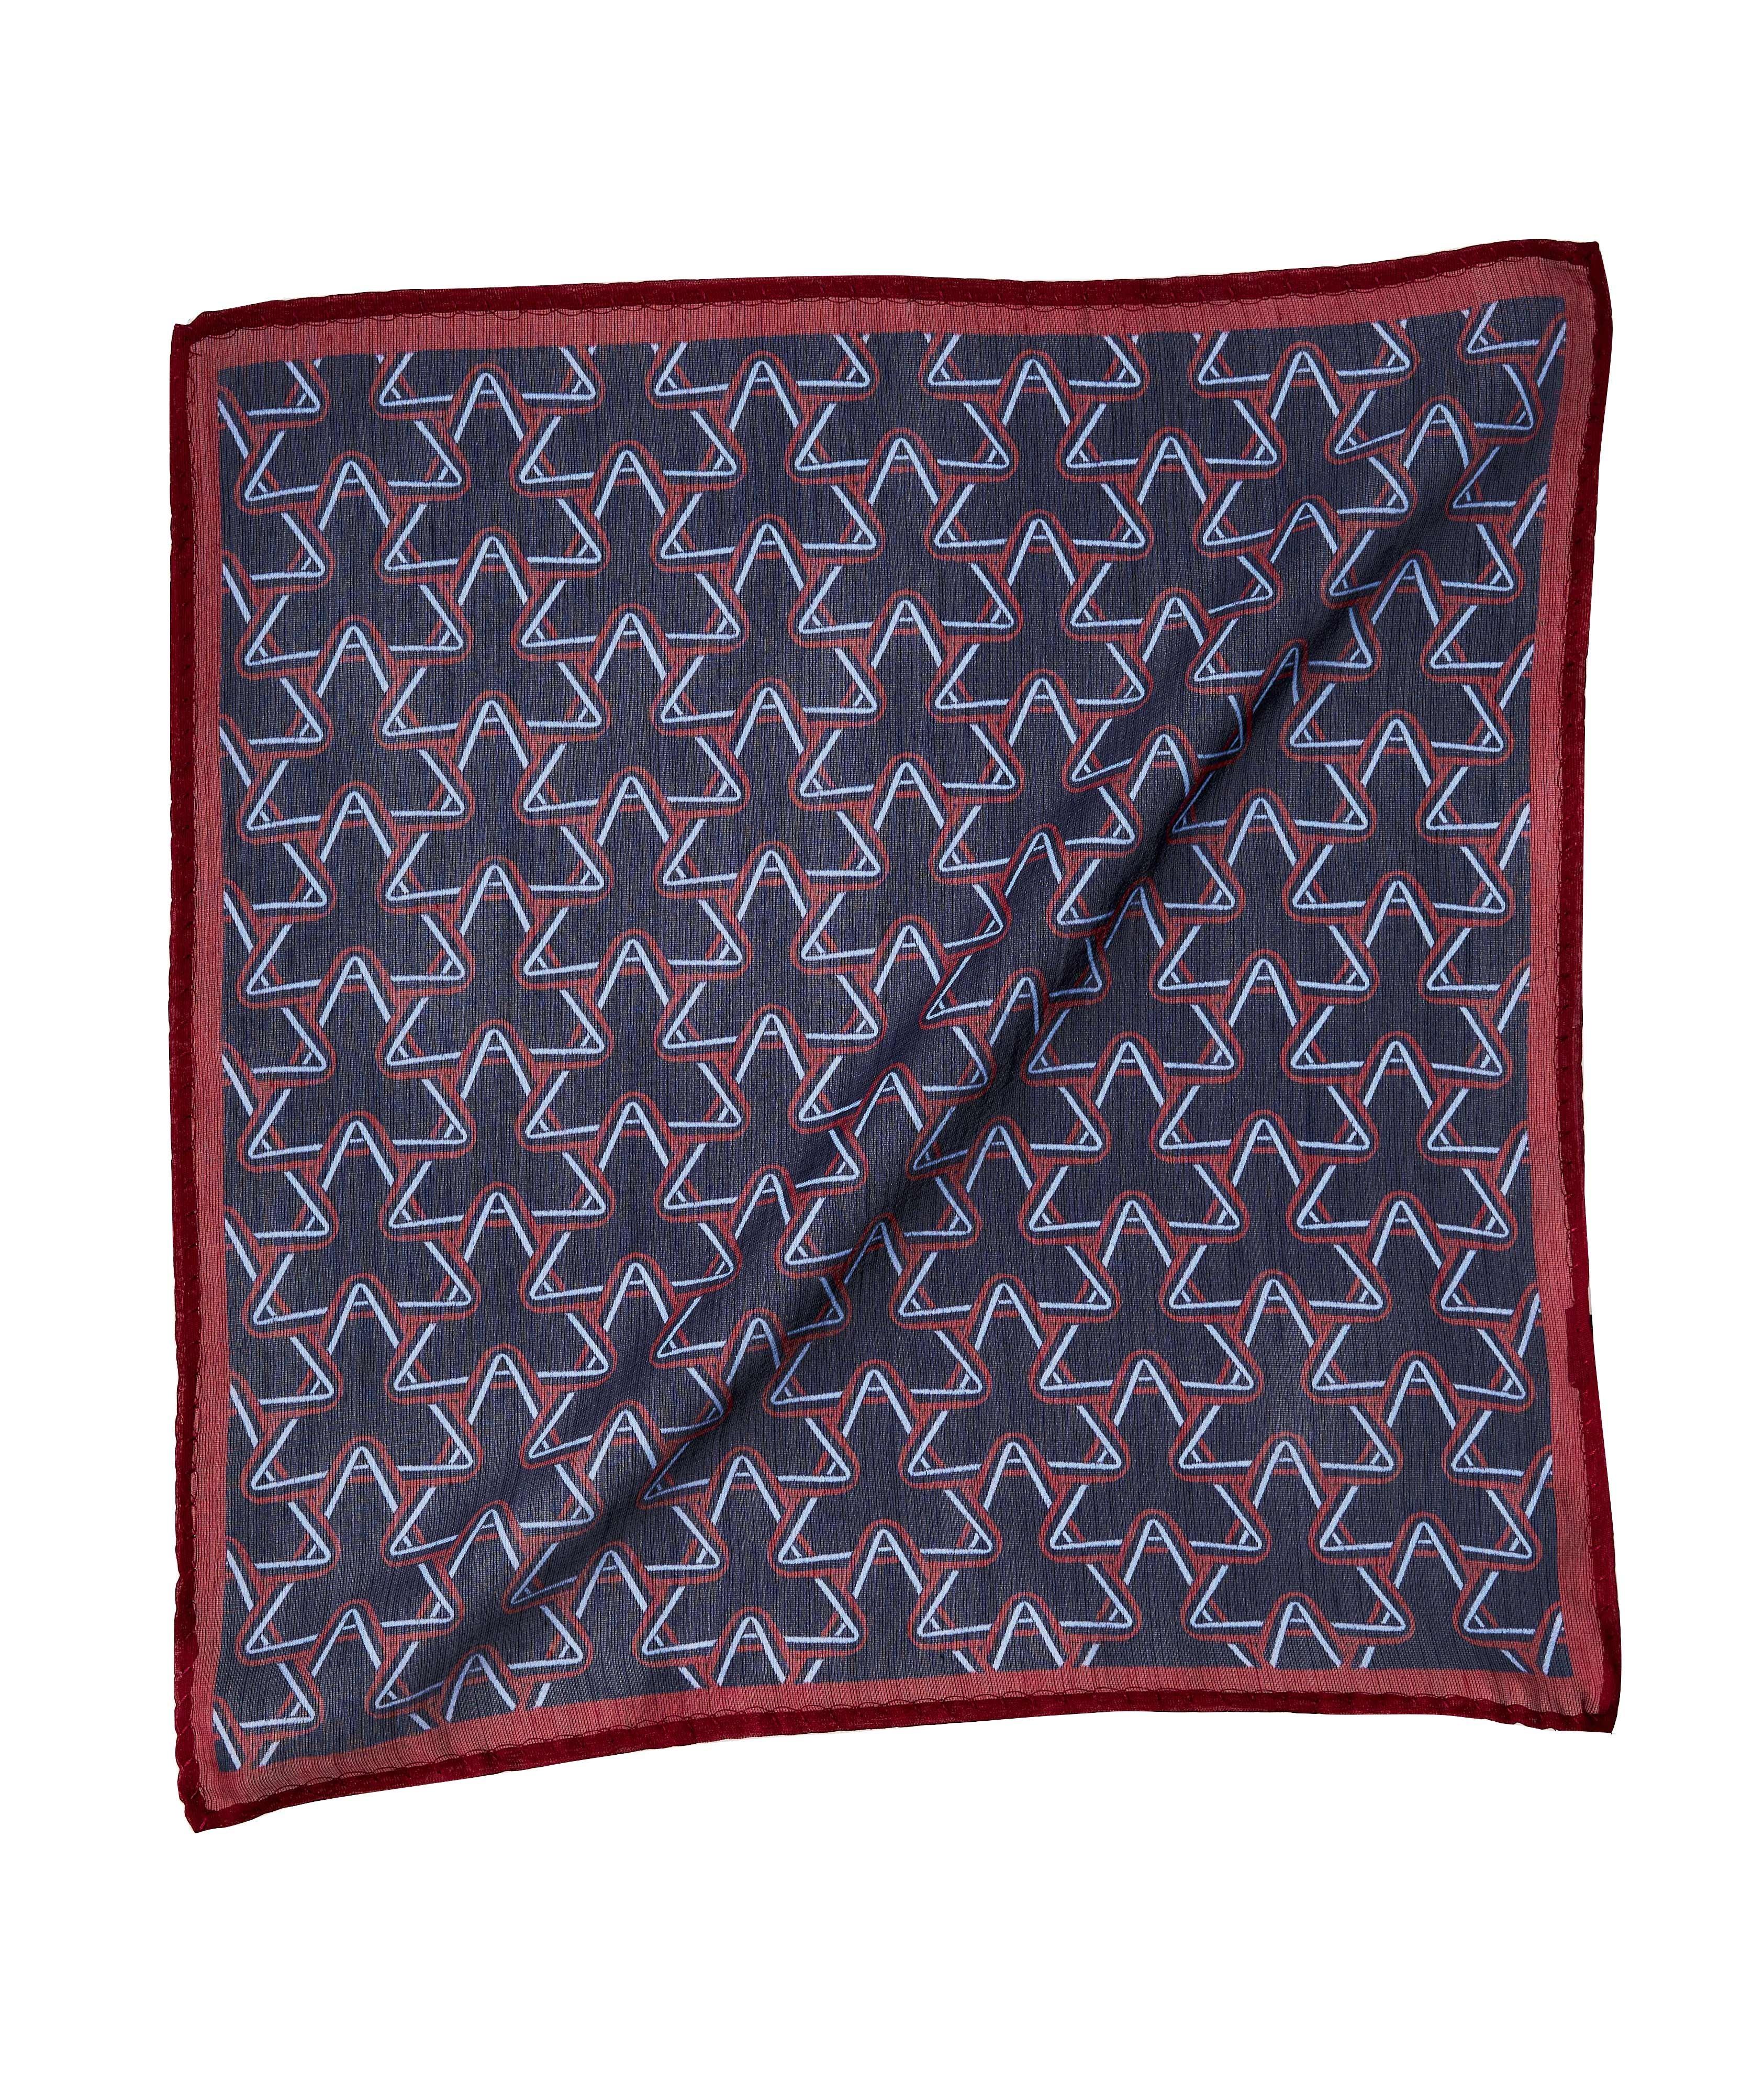 Mouchoir de poche en soie et laine à motif géométrique image 0